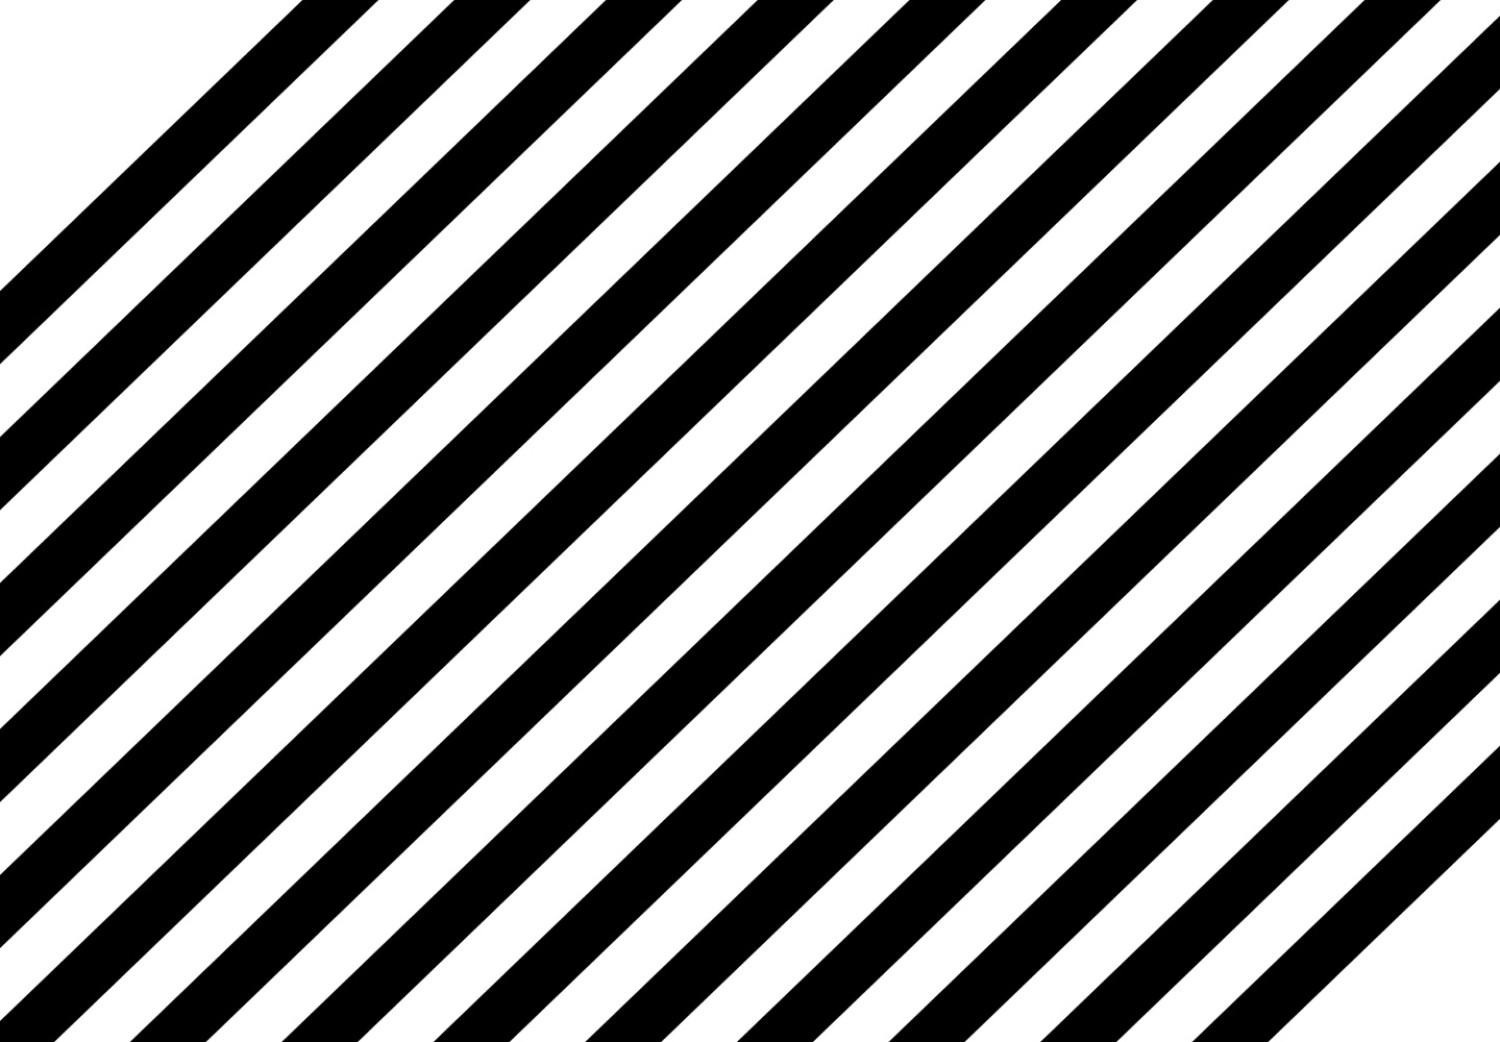 Cartel Sinfonía monocromática - líneas abstractas negras creando ondas